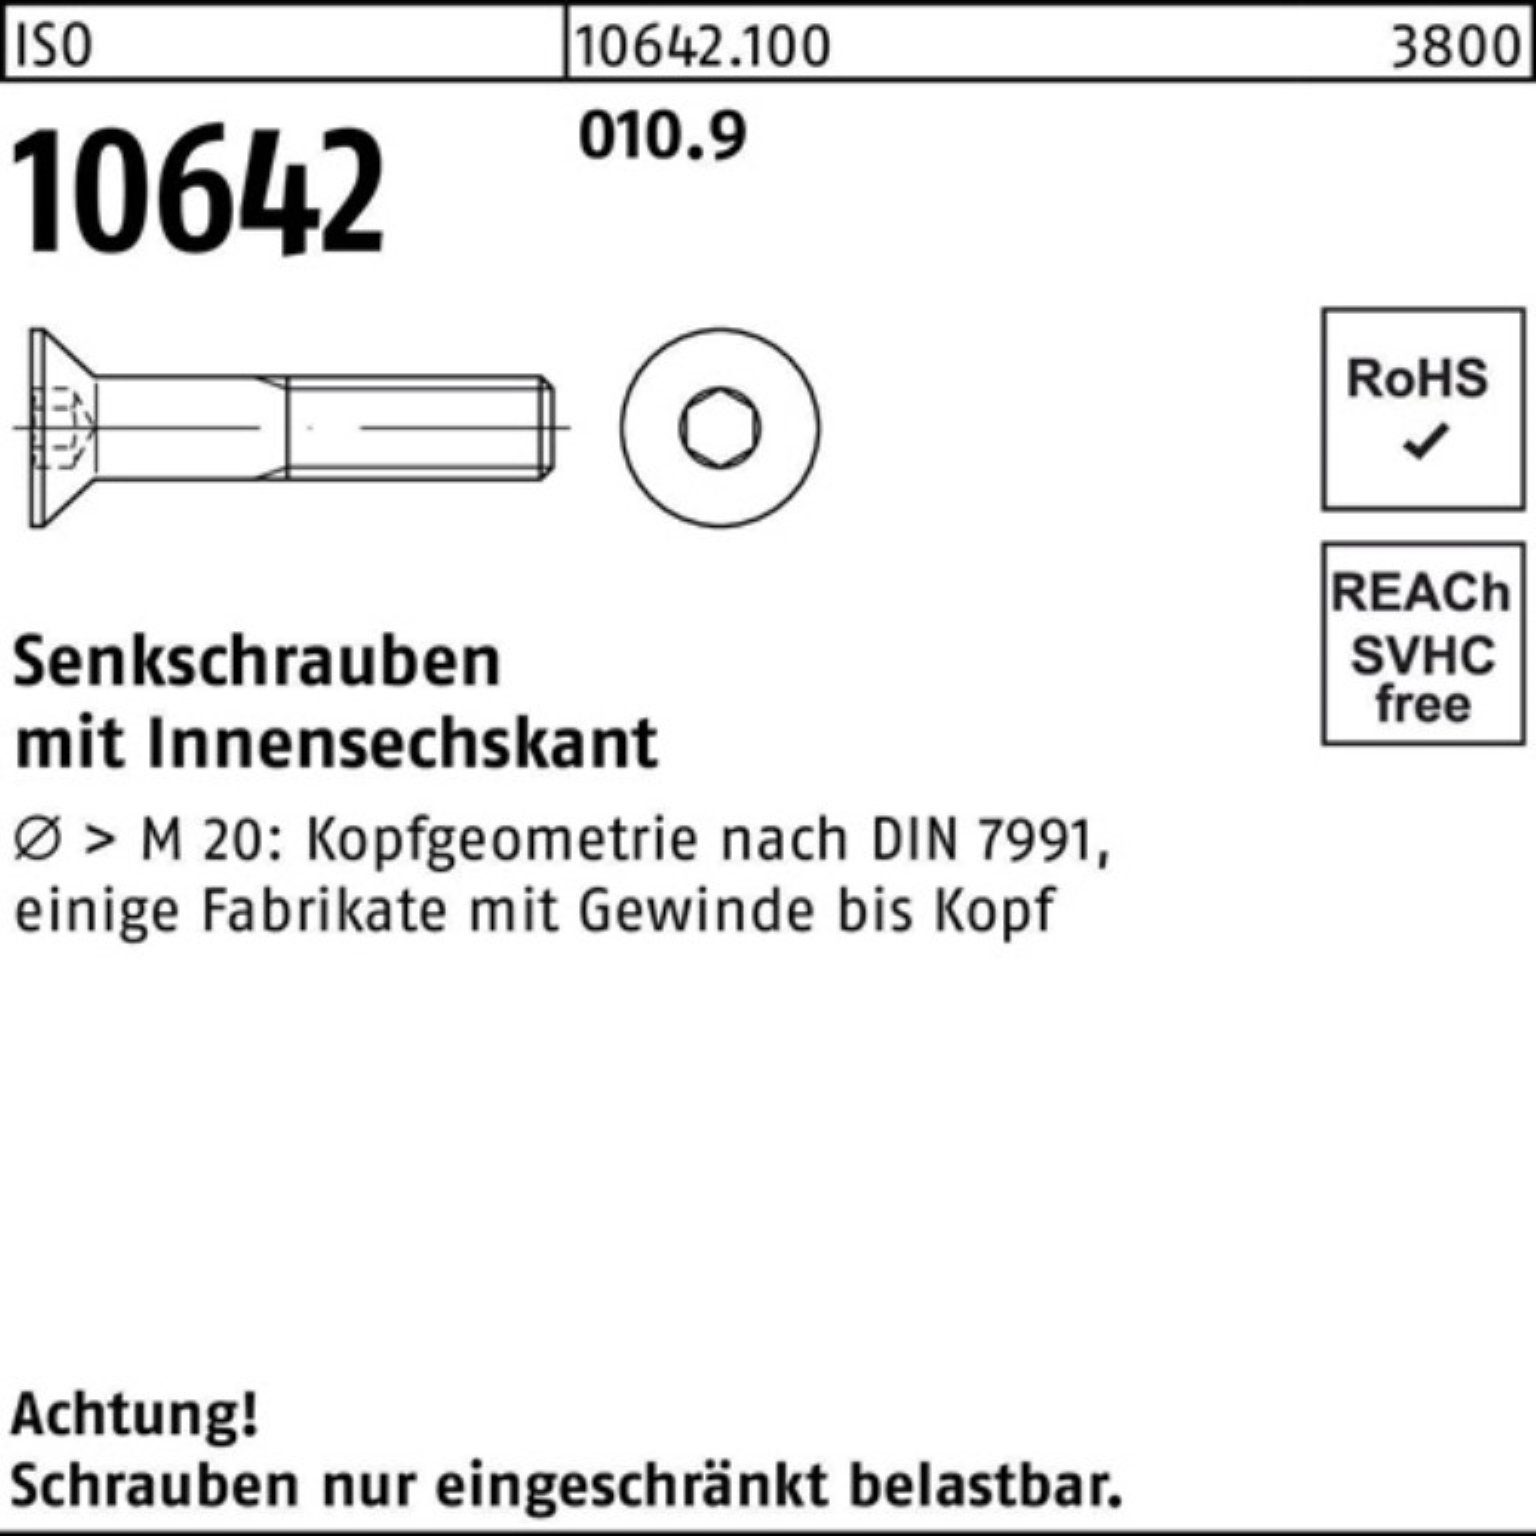 Stück Reyher 010.9 ISO Senkschraube 80 200 Pack IS Innen-6kt 10642 200er Senkschraube M6x